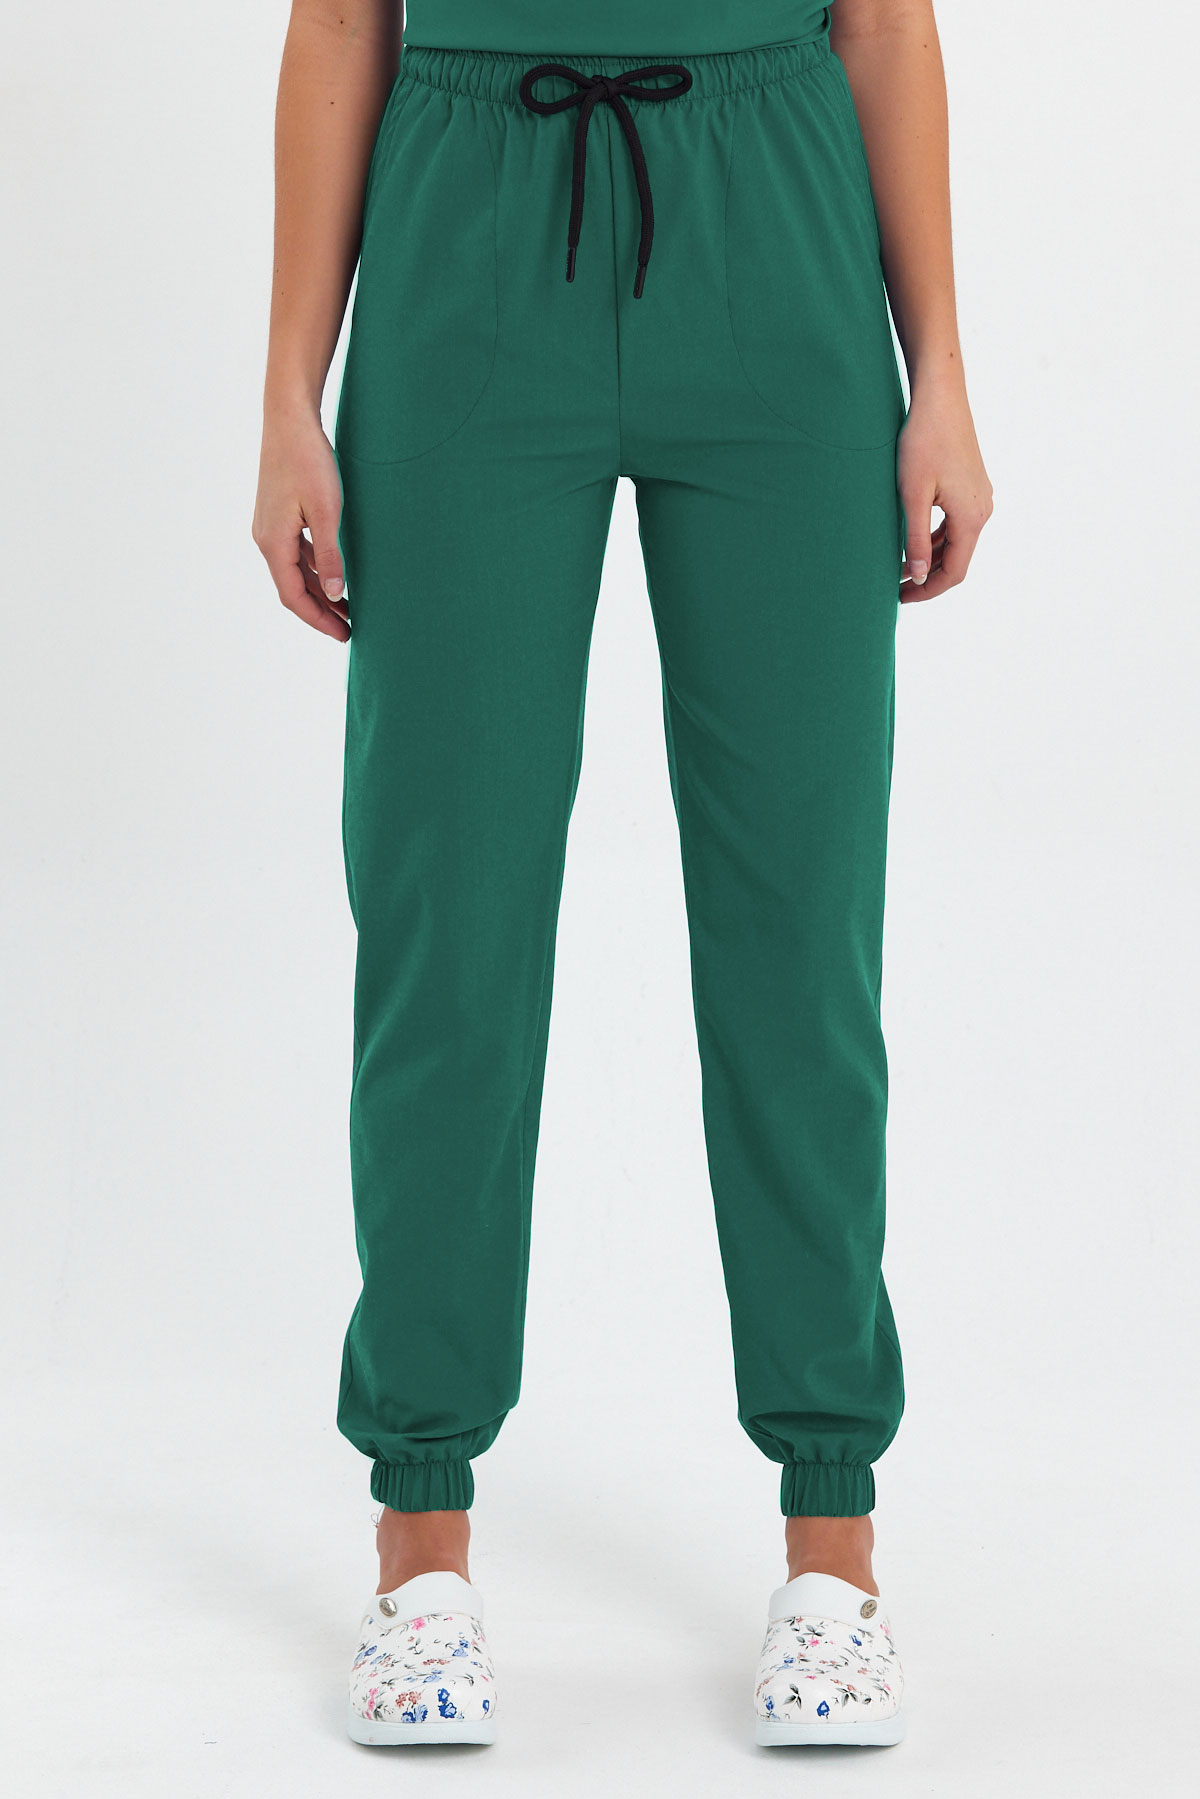 LAME 1010 Basic Likralı Cerrahi Yeşil Scrubs, Hemşire Forması Lastikli Paça Pantolon